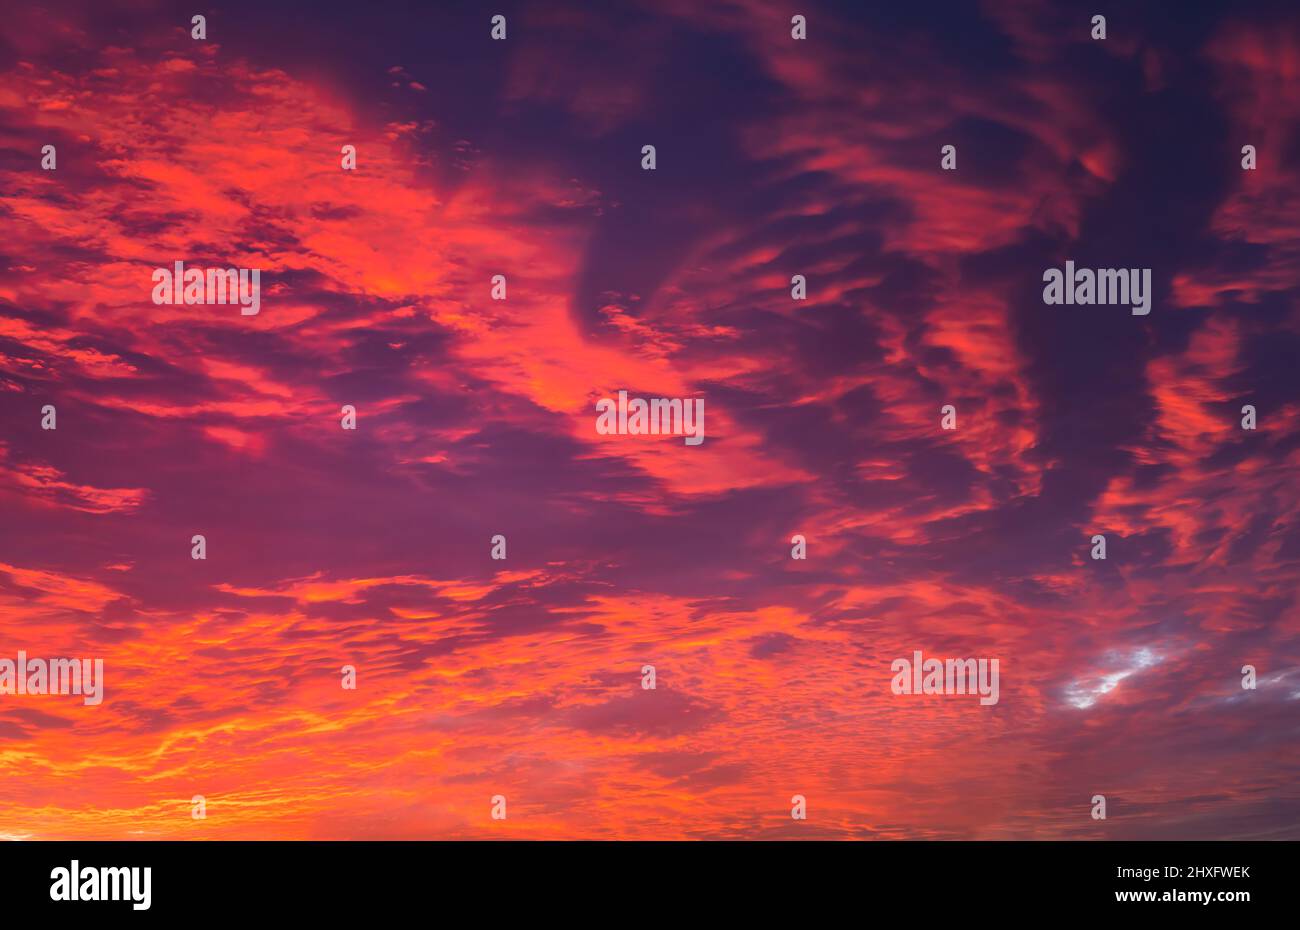 Himmel bei Sonnenuntergang Textur Hintergrund Overlay. Dramatische rote, orange, lila Wolken. Hochauflösende Fotografie, perfekt für den Austausch von Himmel Stockfoto